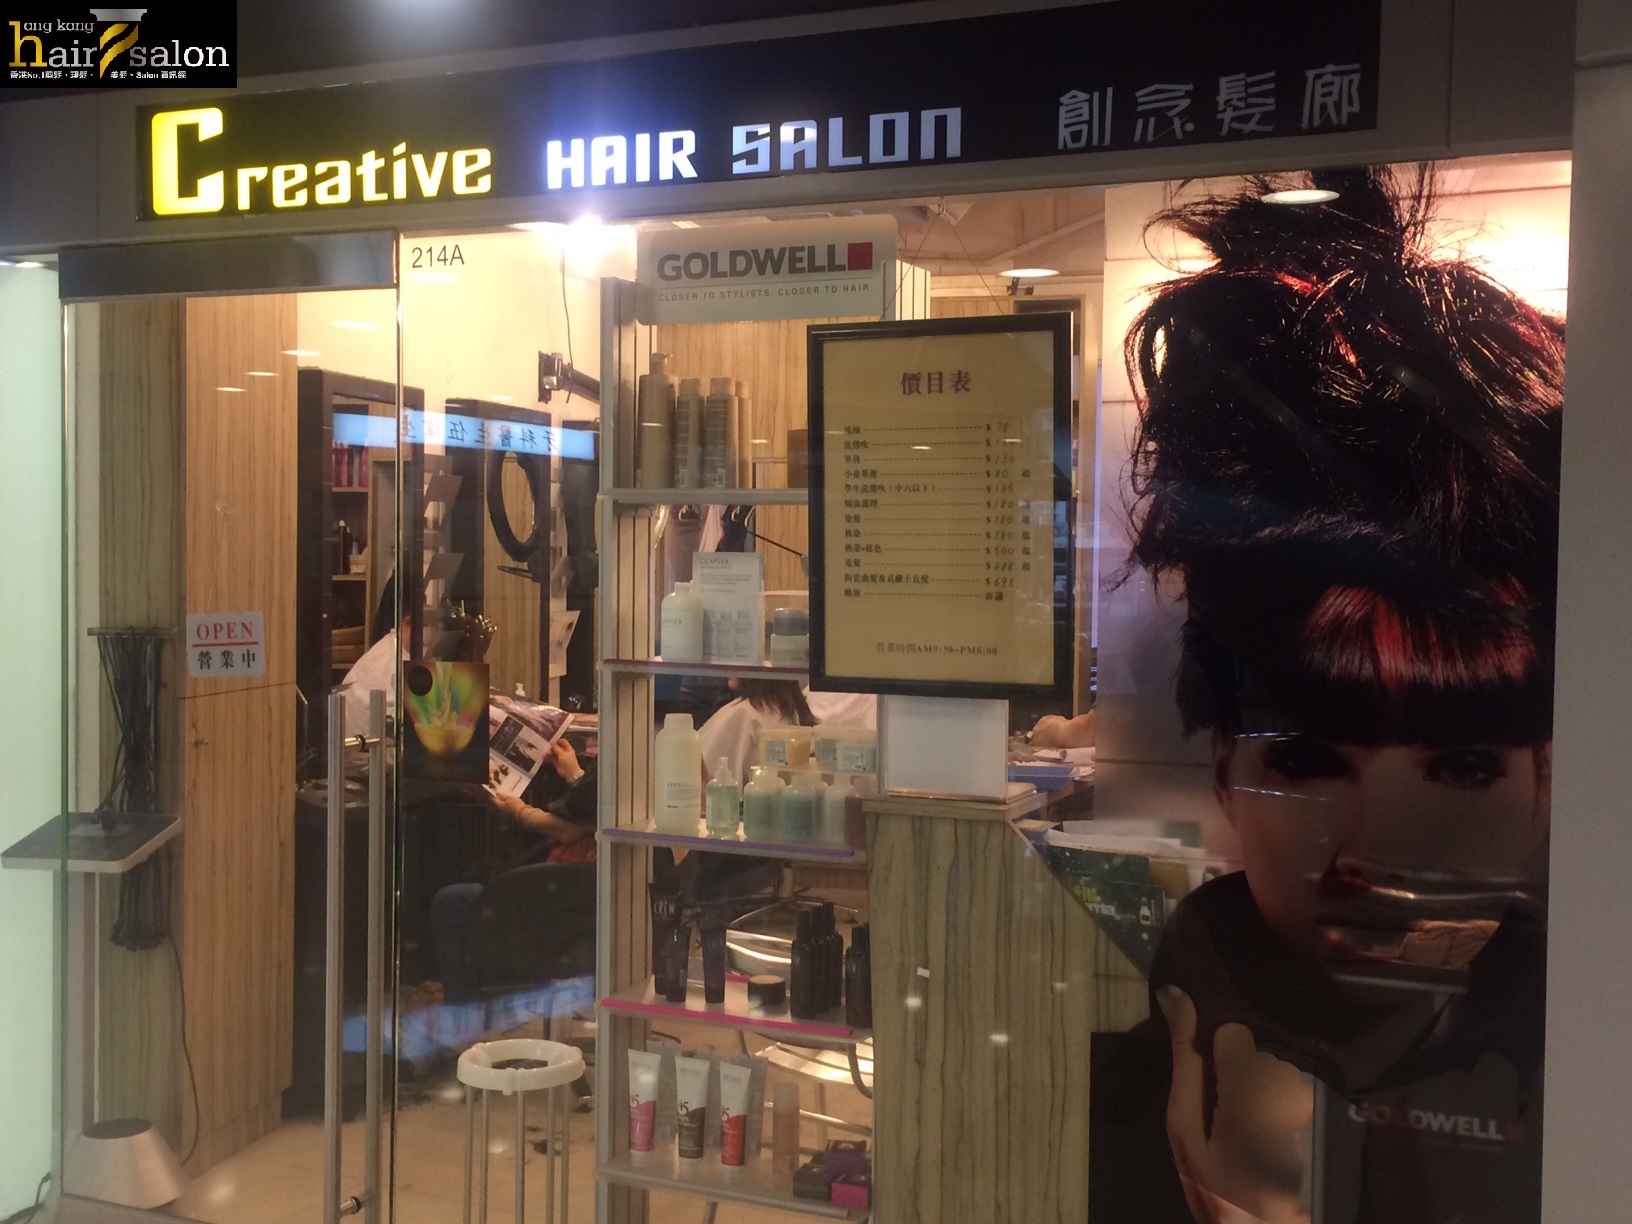 香港美髮網 HK Hair Salon 髮型屋Salon / 髮型師: Creative Hair Salon 創念髮廊